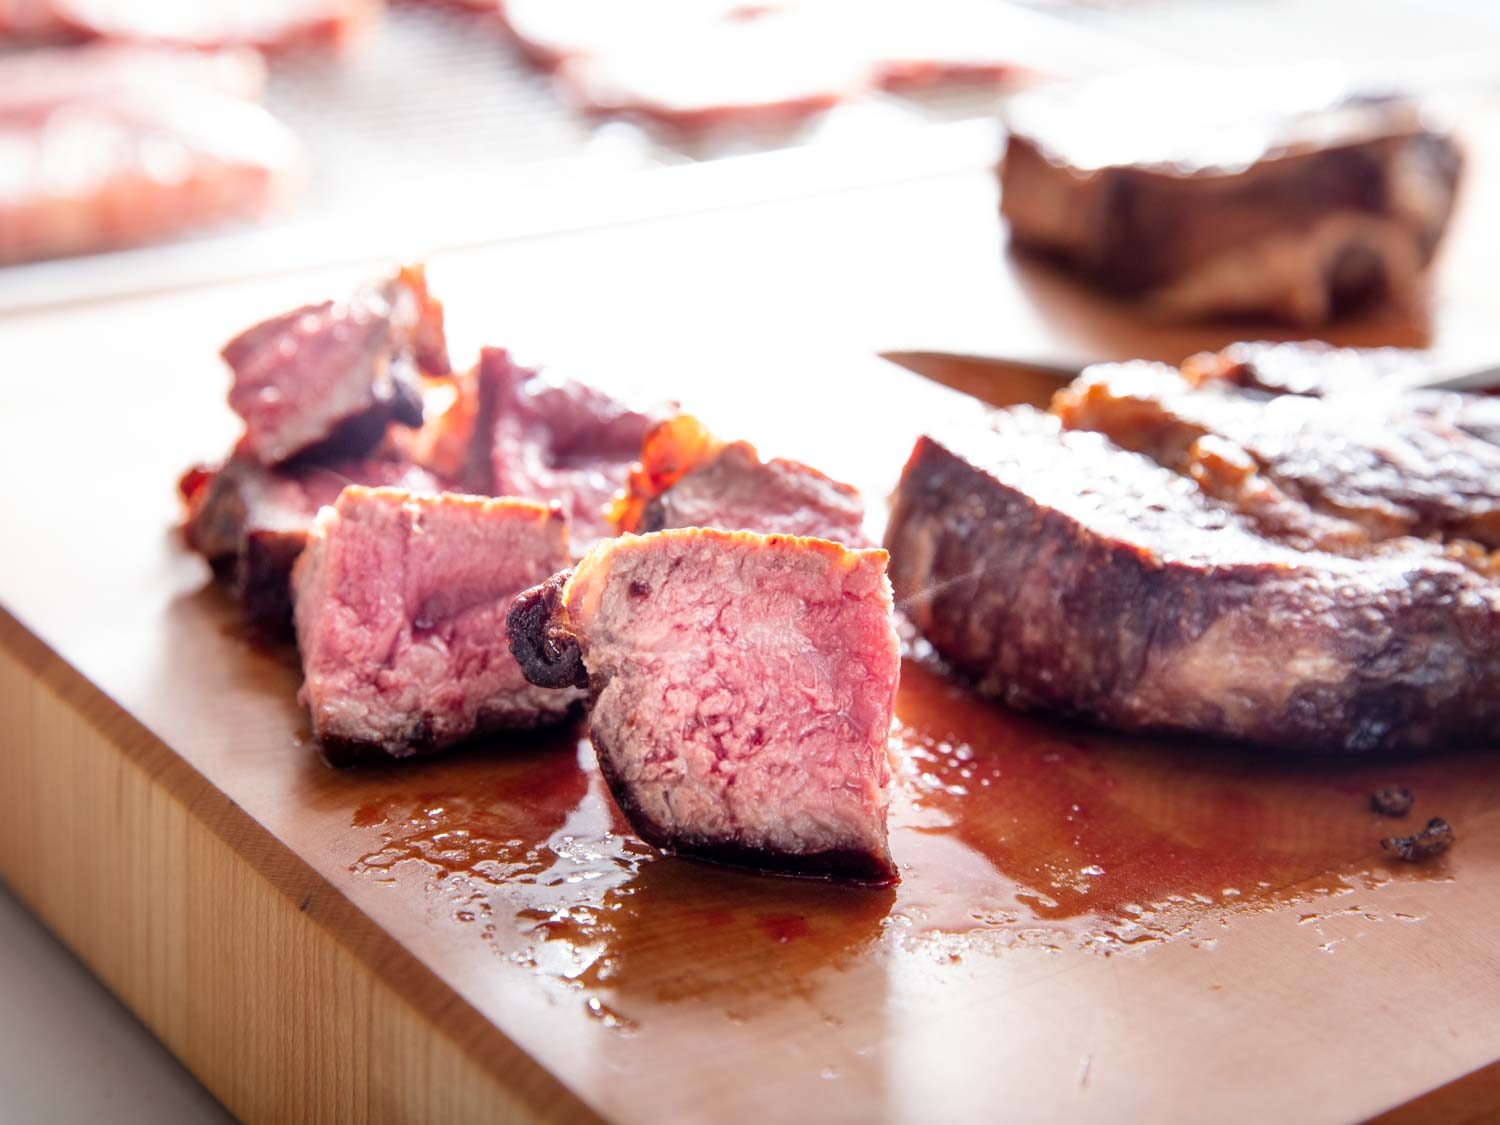 Sliced American wagyu steak on a cutting board